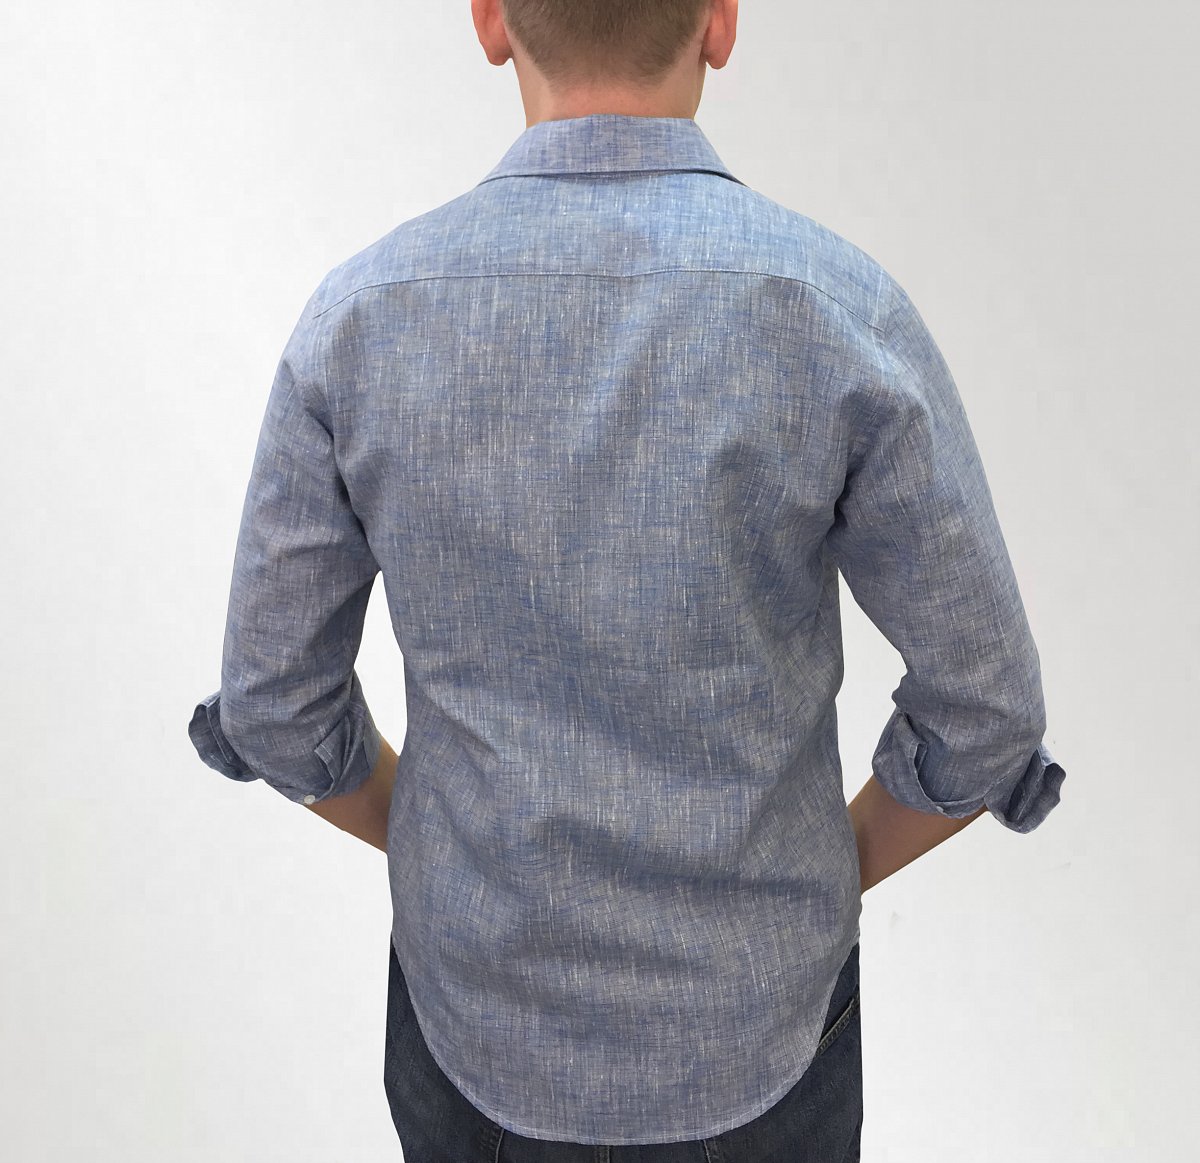 Пошив рубашек - пример модели рубашка мужская